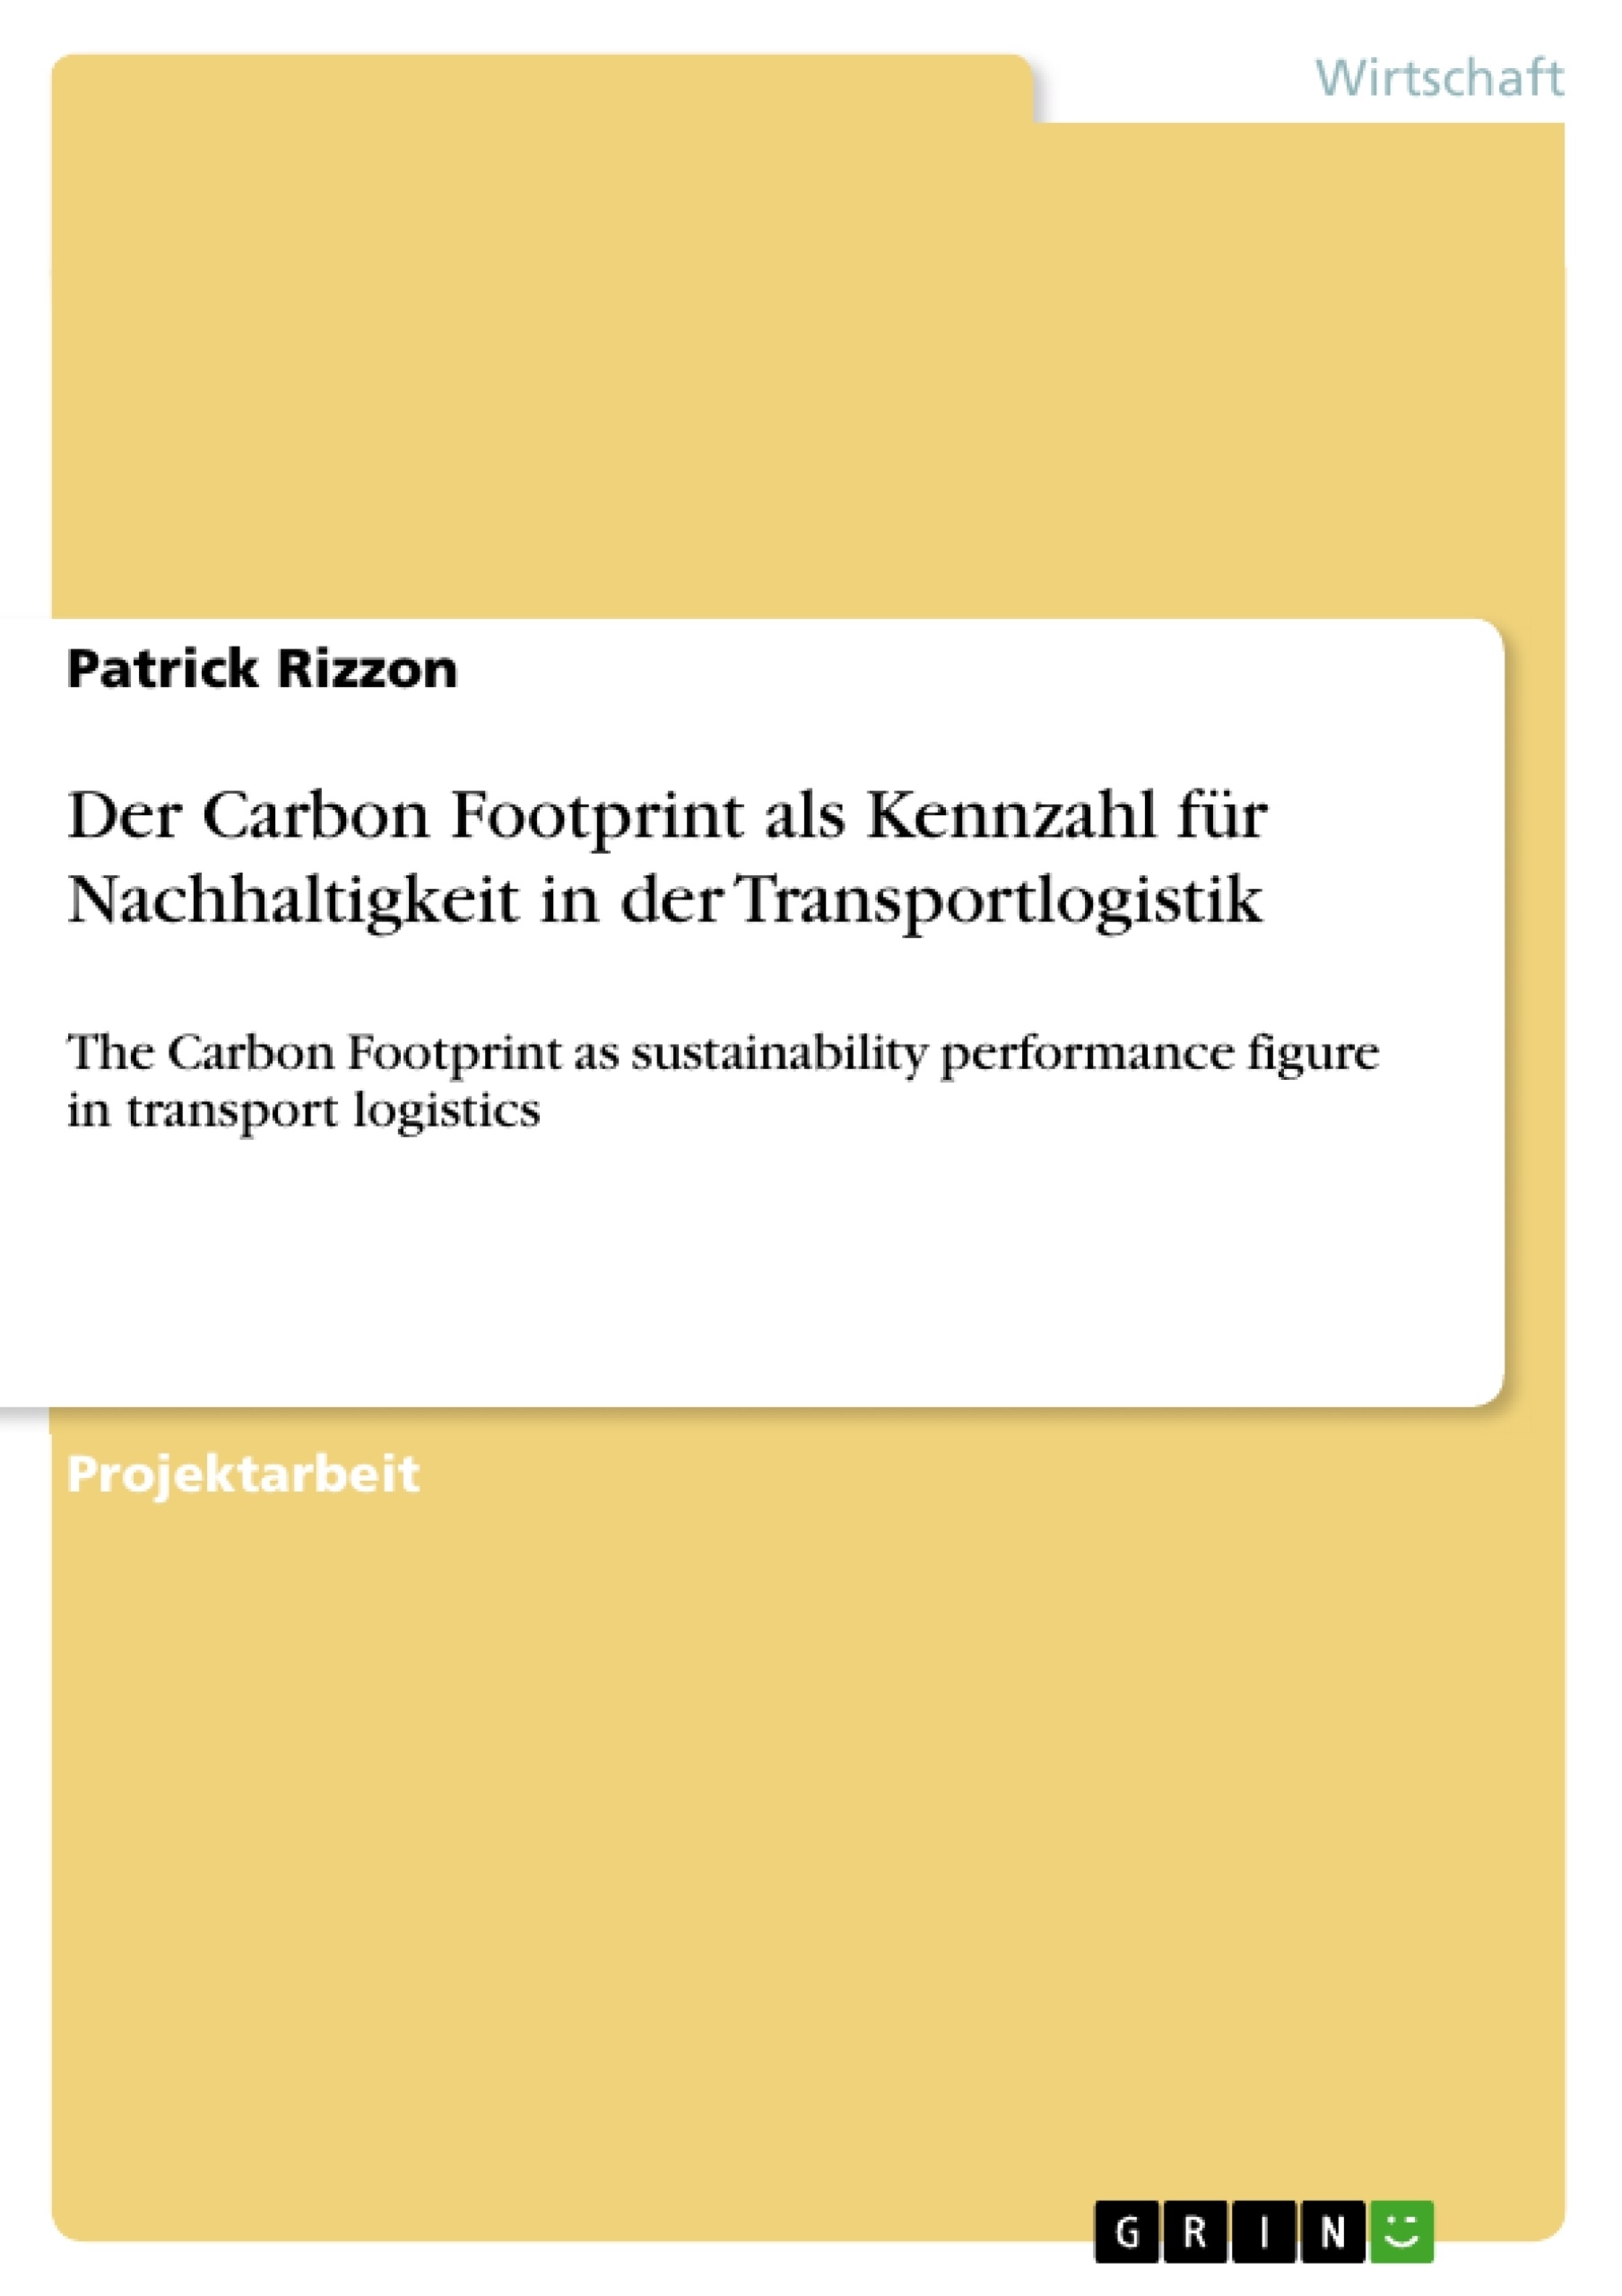 Título: Der Carbon Footprint als Kennzahl für Nachhaltigkeit in der Transportlogistik